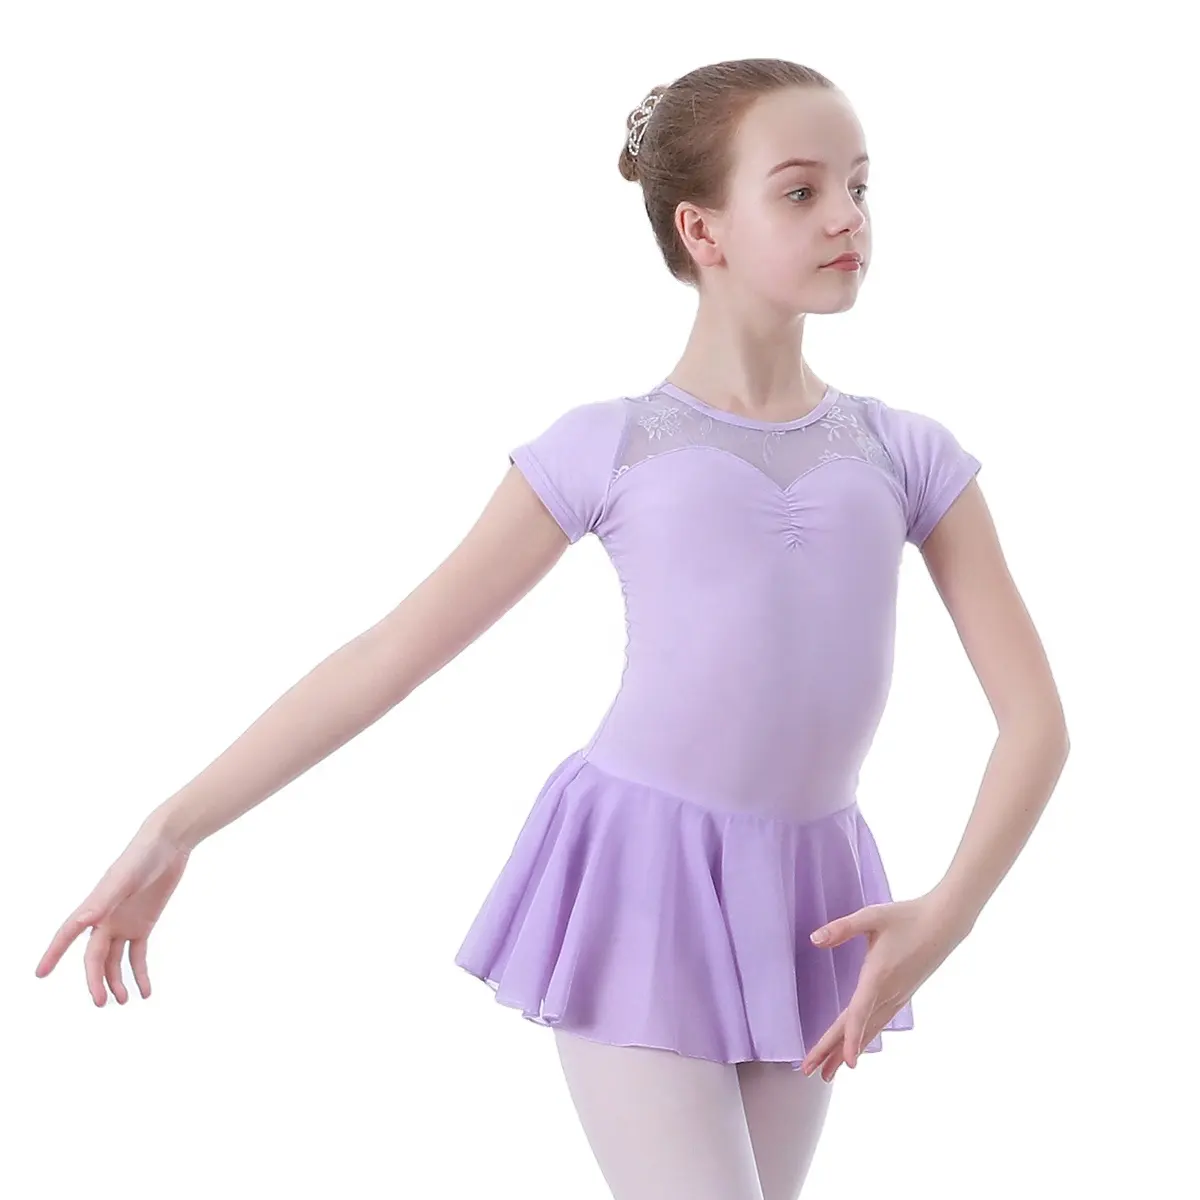 Kinder Tanzkostüme Mädchen Kamizolle Rüschen-Strumpfhosen Ballett Tanzbekleidung Strumpfhosen Kinderkleidung